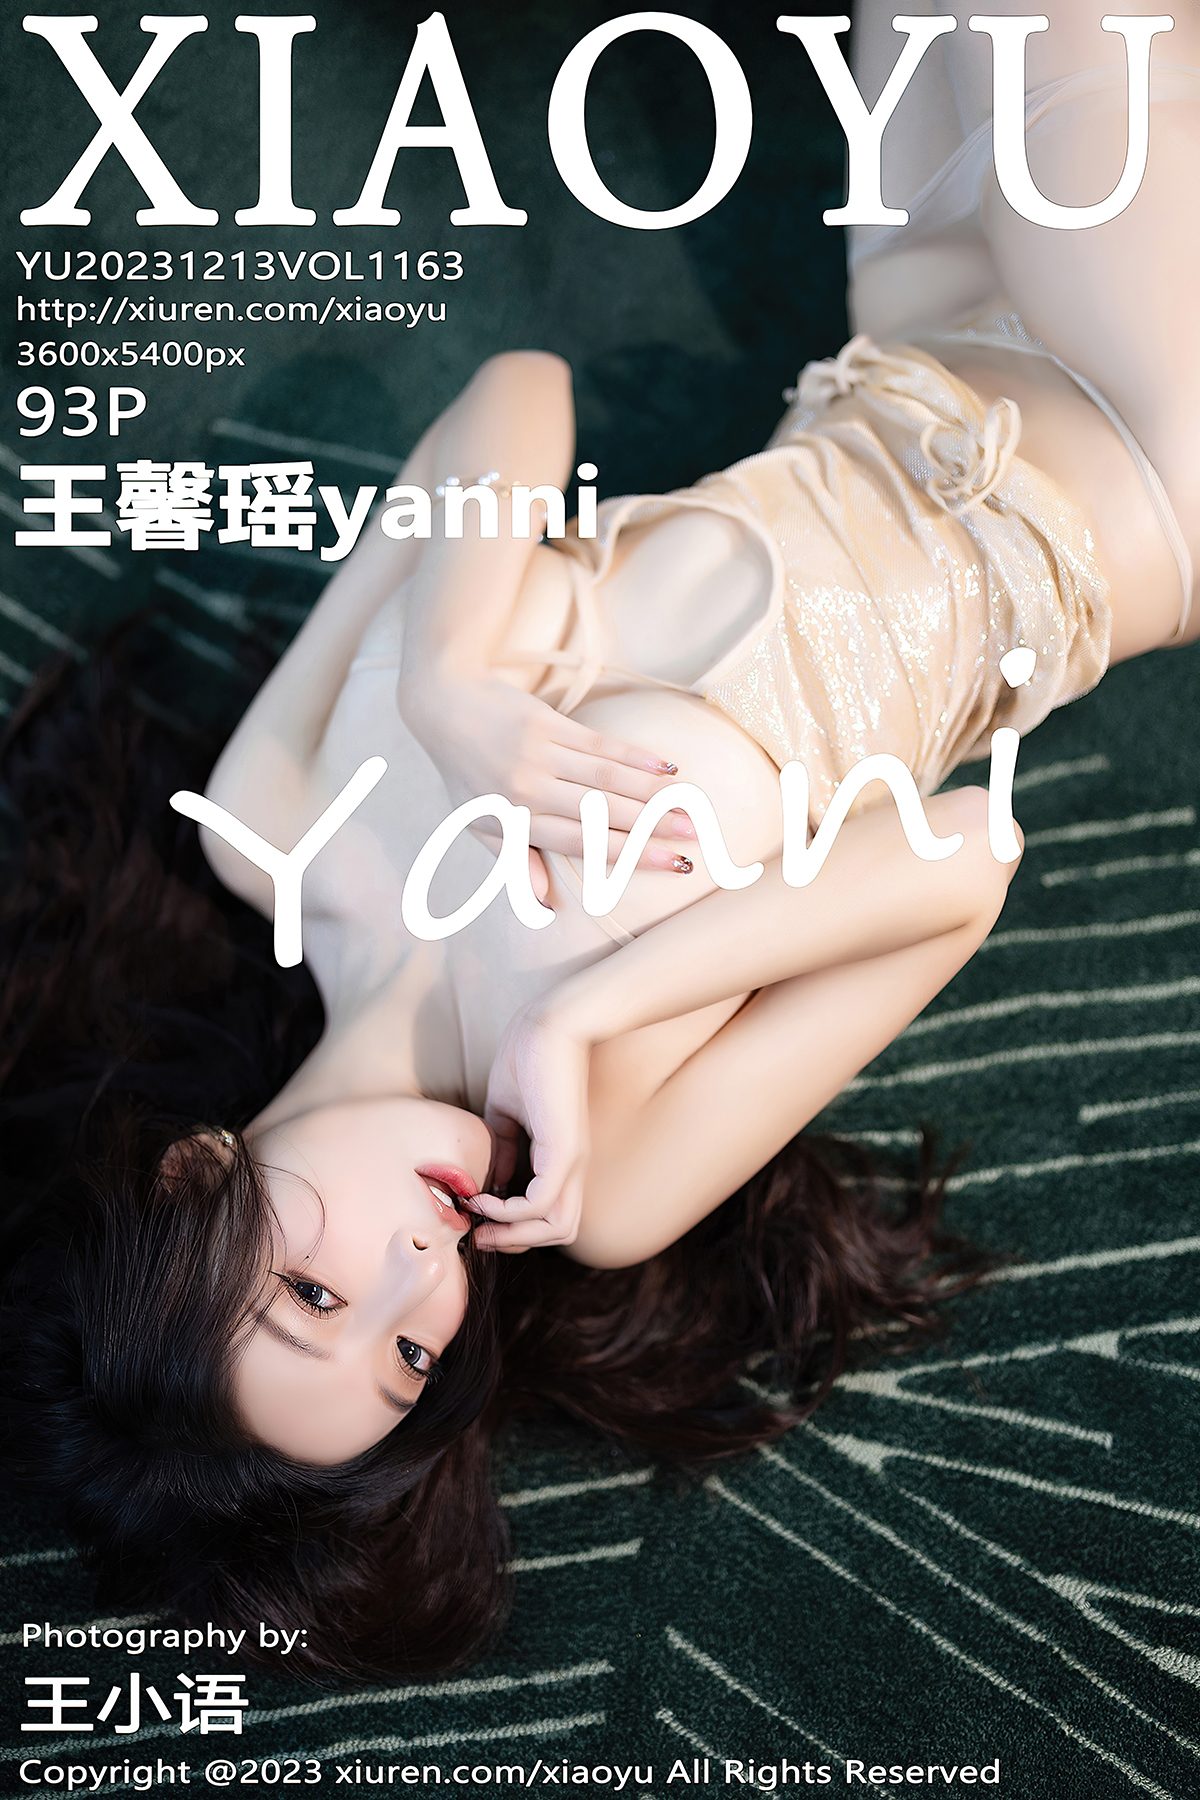 XiaoYu语画界 Vol 1163 Wang Xin Yao Yanni 0088 9534270637.jpg